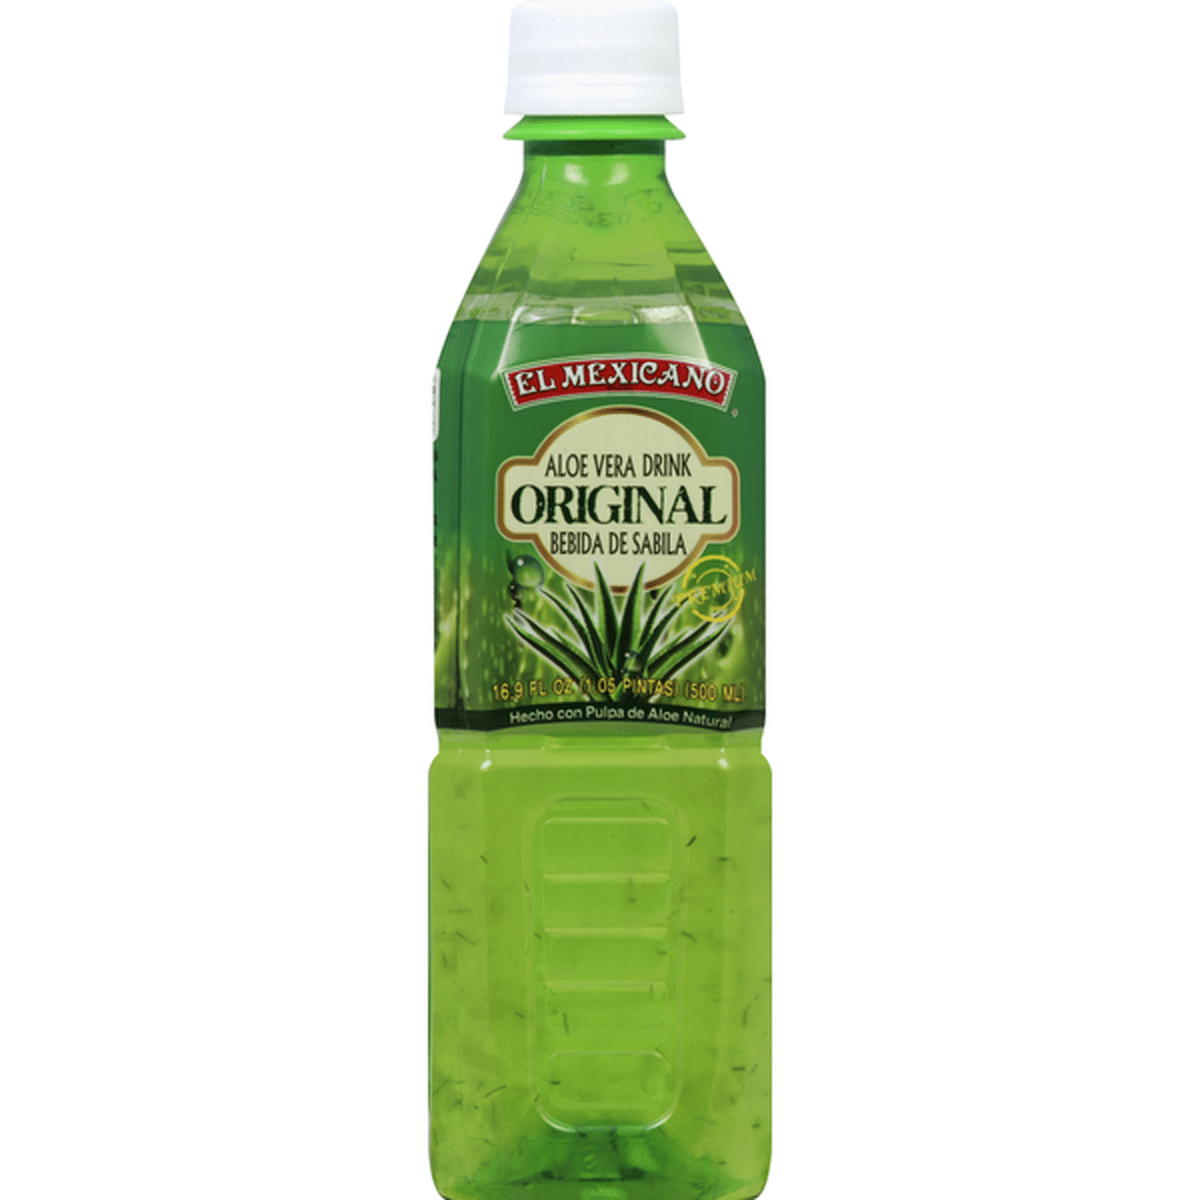 El Mexicano Aloe Vera Drink Original 169 Fl Oz Delivery Or Pickup Near Me Instacart 5635